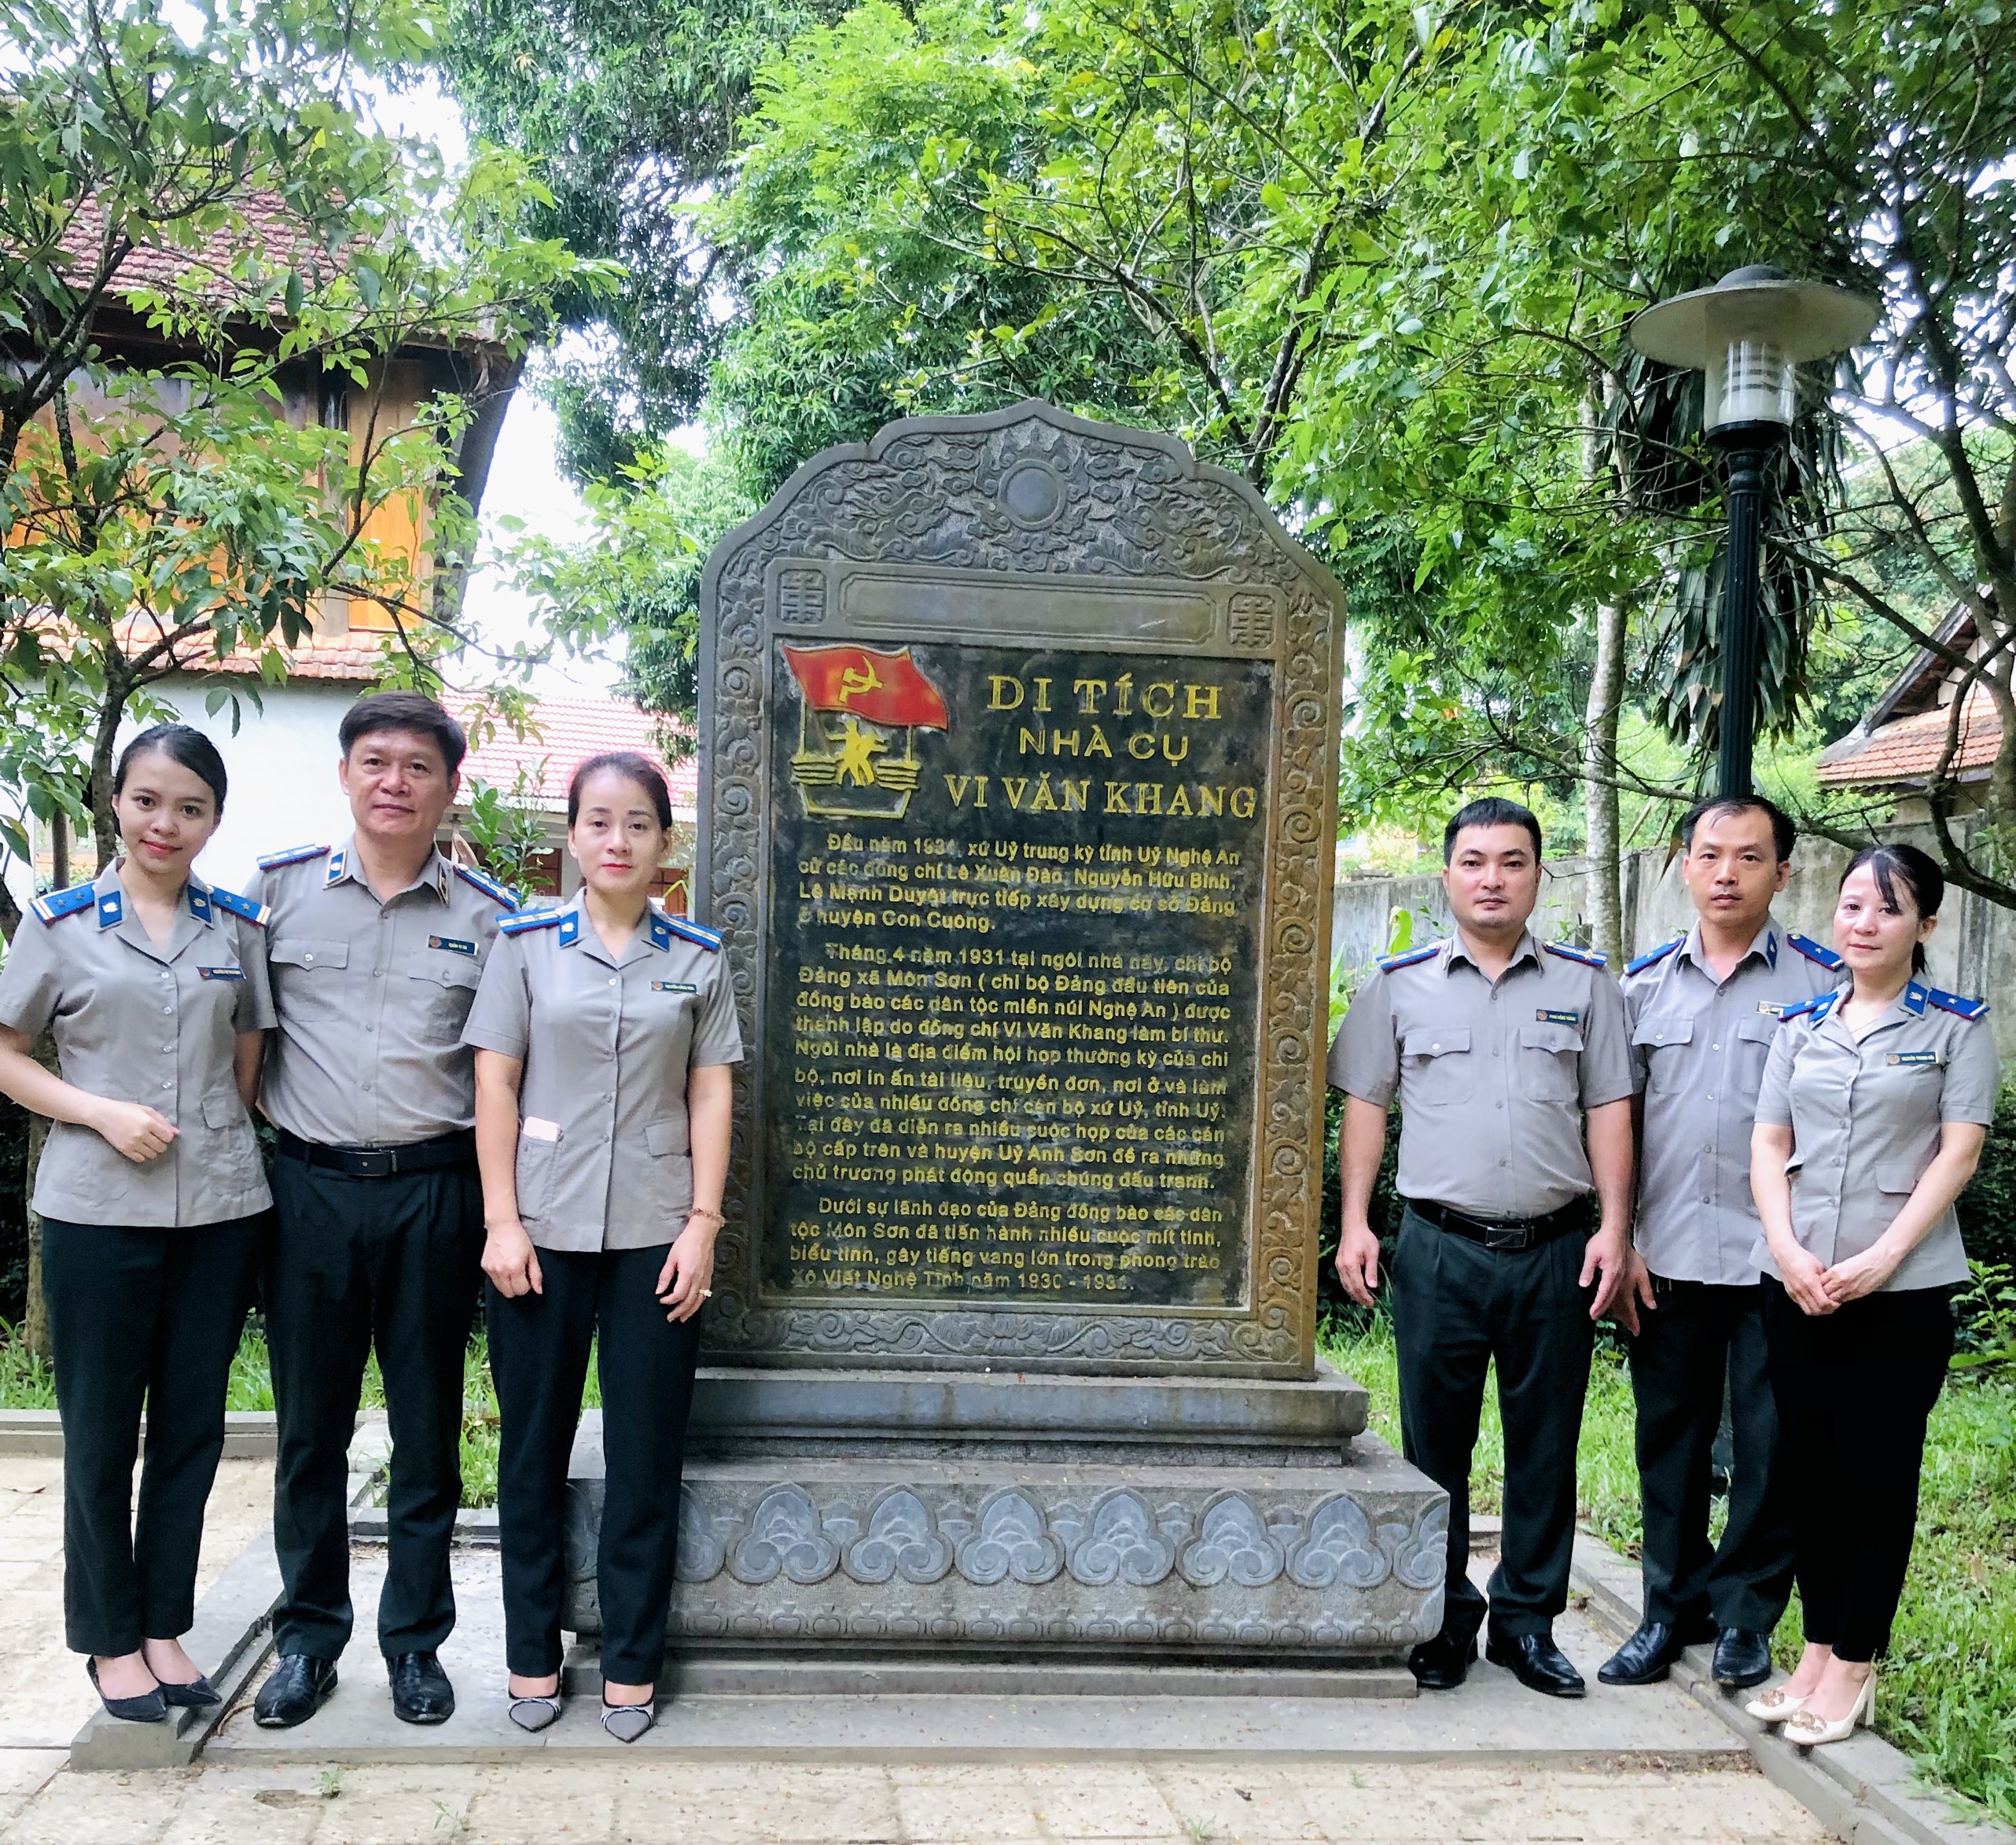 Chi cục THADS huyện Con Cuông tổ chức các hoạt động chào mừng 77 năm Ngày Truyền thống Thi hành án dân sự  (19/7/1946 - 19/7/2023) và 30 năm chuyển giao công tác thi hành án dân sự (1993 - 2023)